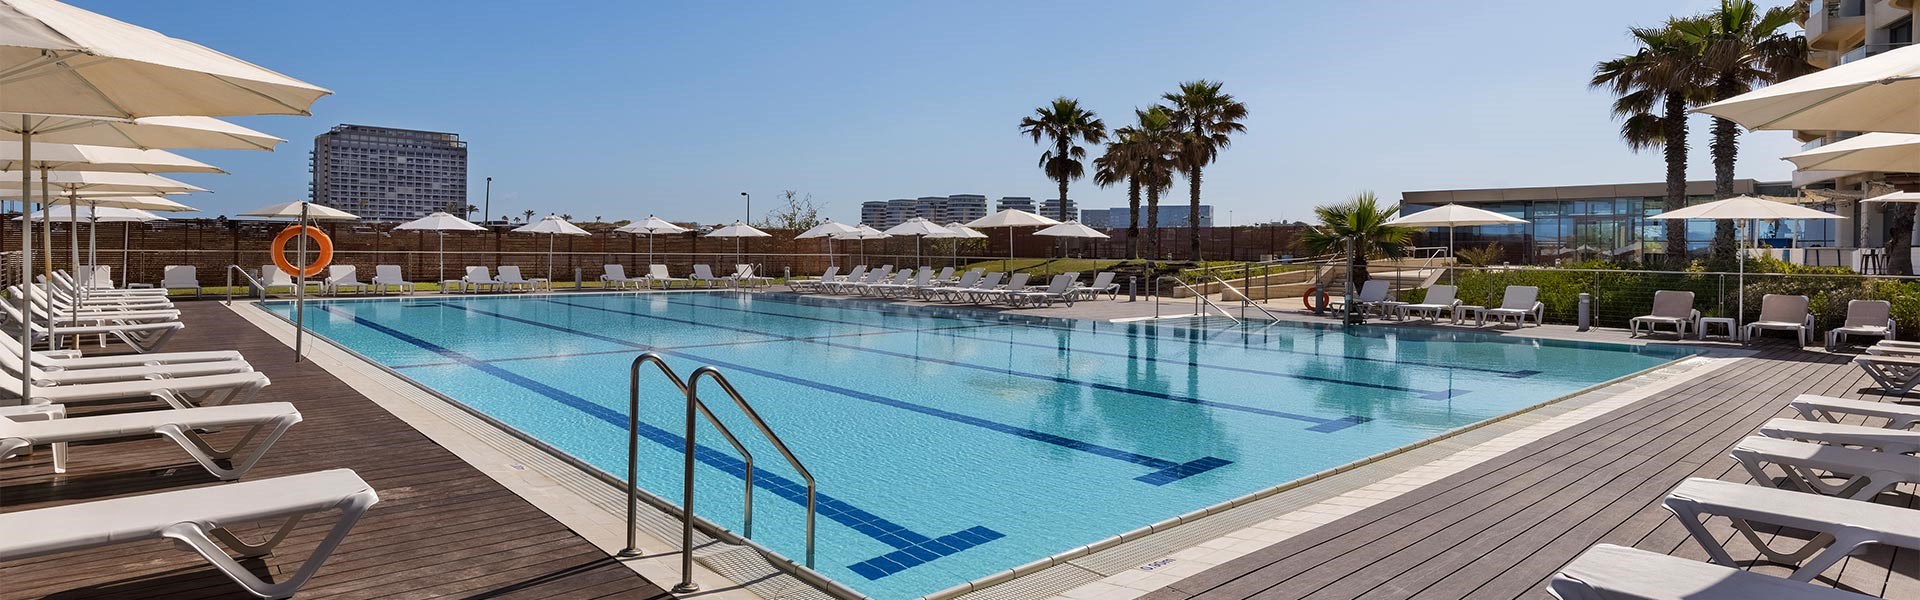 מלון ווסט תל אביב - מתקני המלון